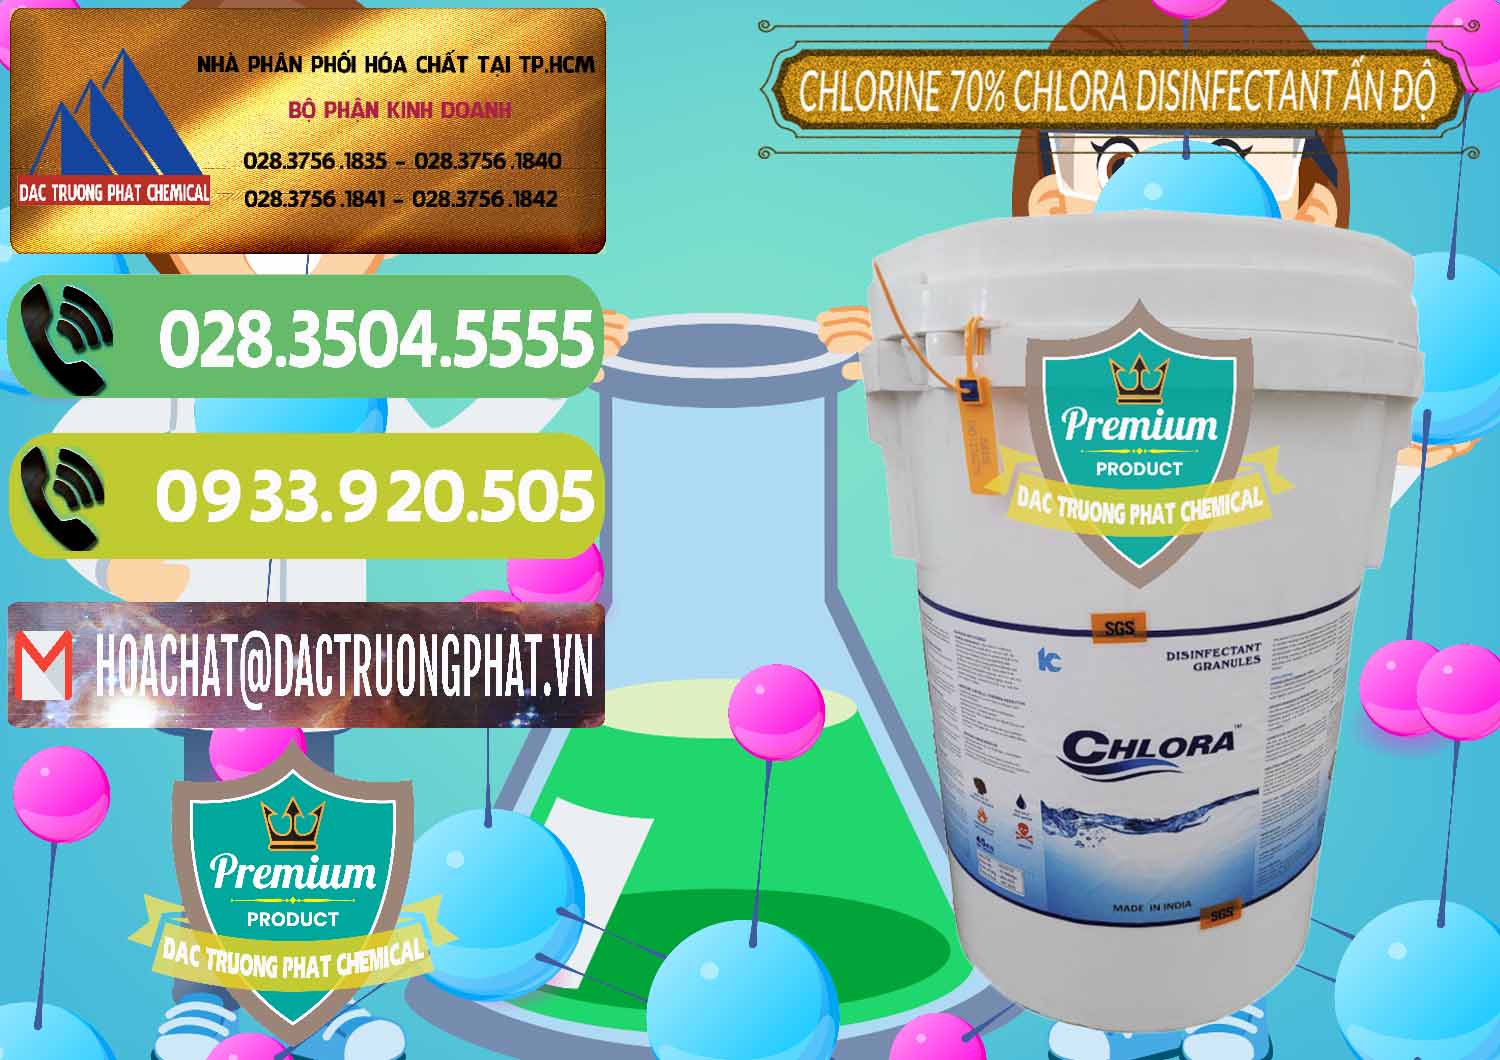 Nơi bán & cung cấp Chlorine – Clorin 70% Chlora Disinfectant Ấn Độ India - 0213 - Cty chuyên kinh doanh _ phân phối hóa chất tại TP.HCM - hoachatmientay.vn